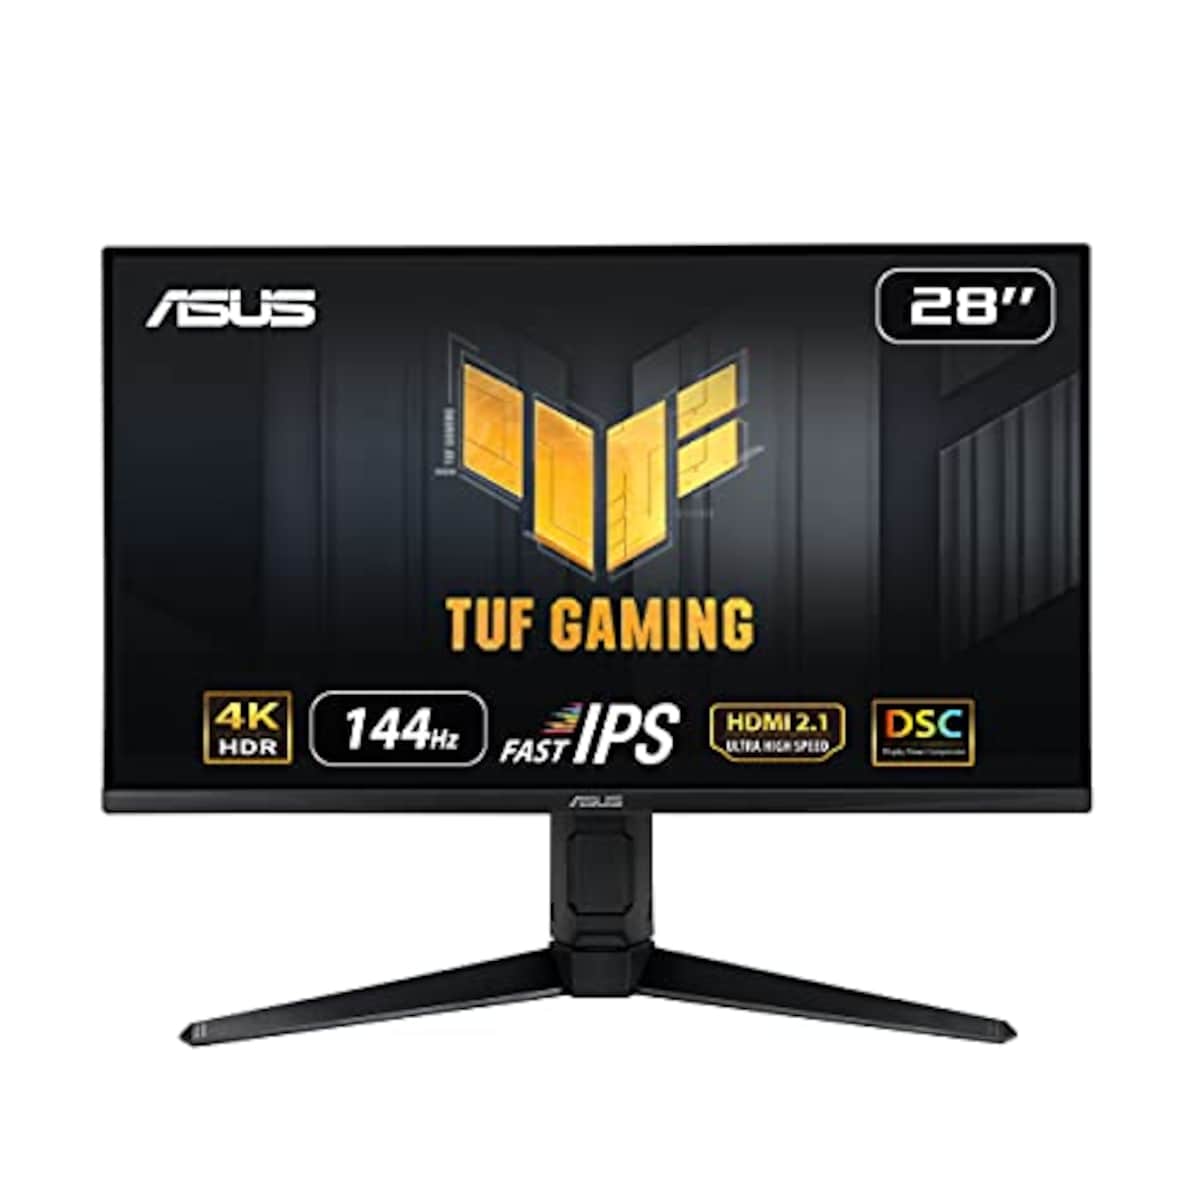 ASUS ゲーミングモニター TUF Gaming VG28UQL1A 28インチ/4K/144Hz/HDMI 2.1,DP/IPS/1ms/ PS5/ファイナルファンタジーXIV推奨モニター/国内正規品